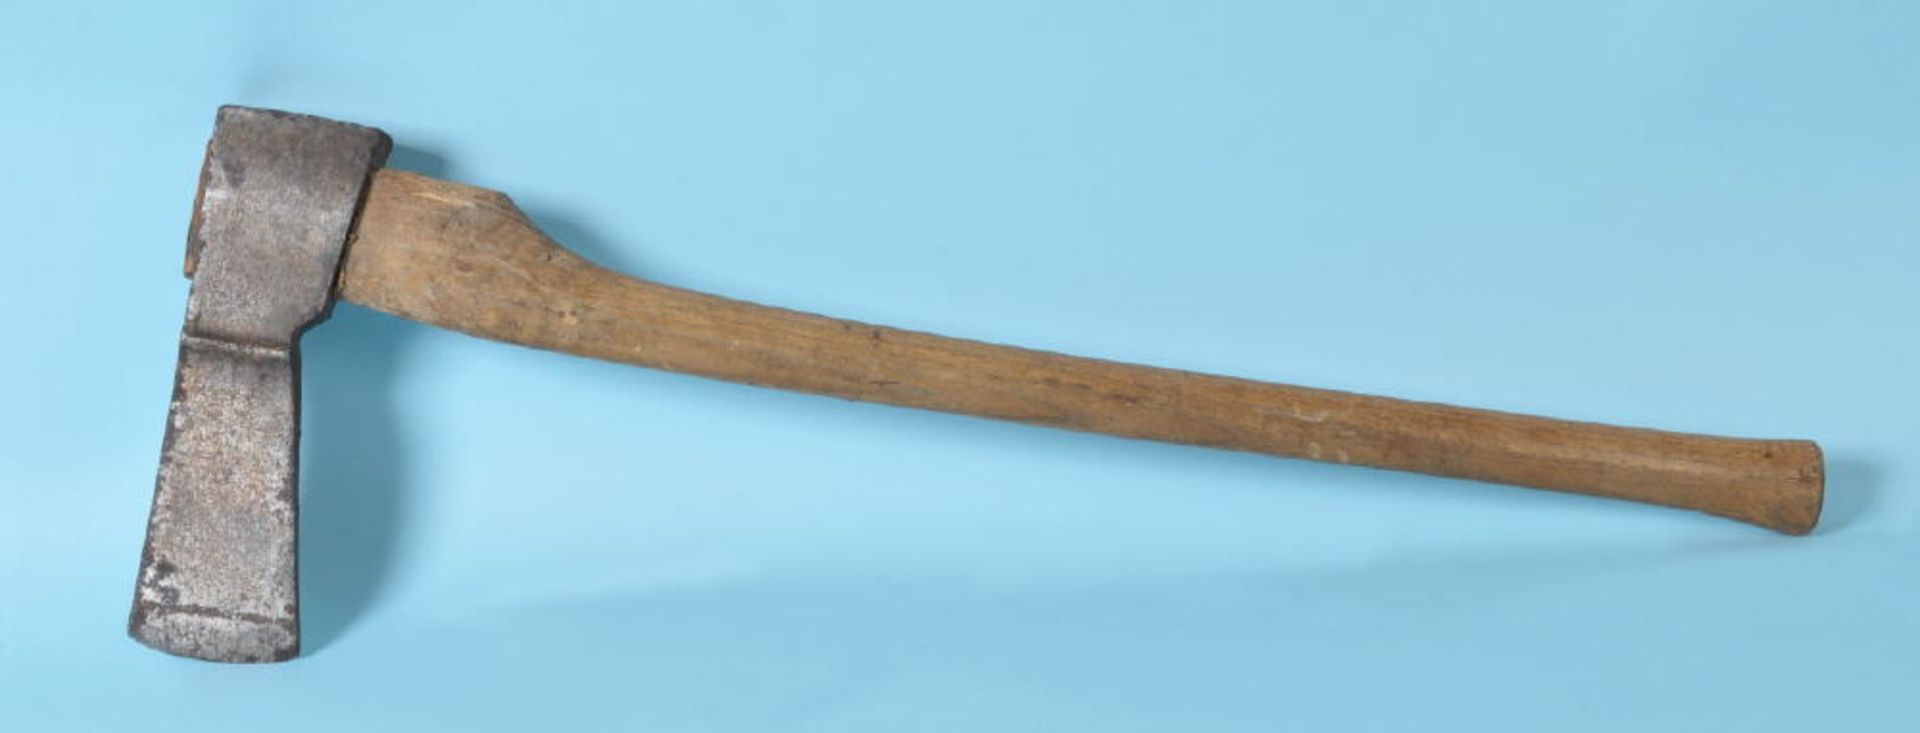 AxtSchmiedeeisen/Holz, L= 77 cm, mit Schmiedezeichen